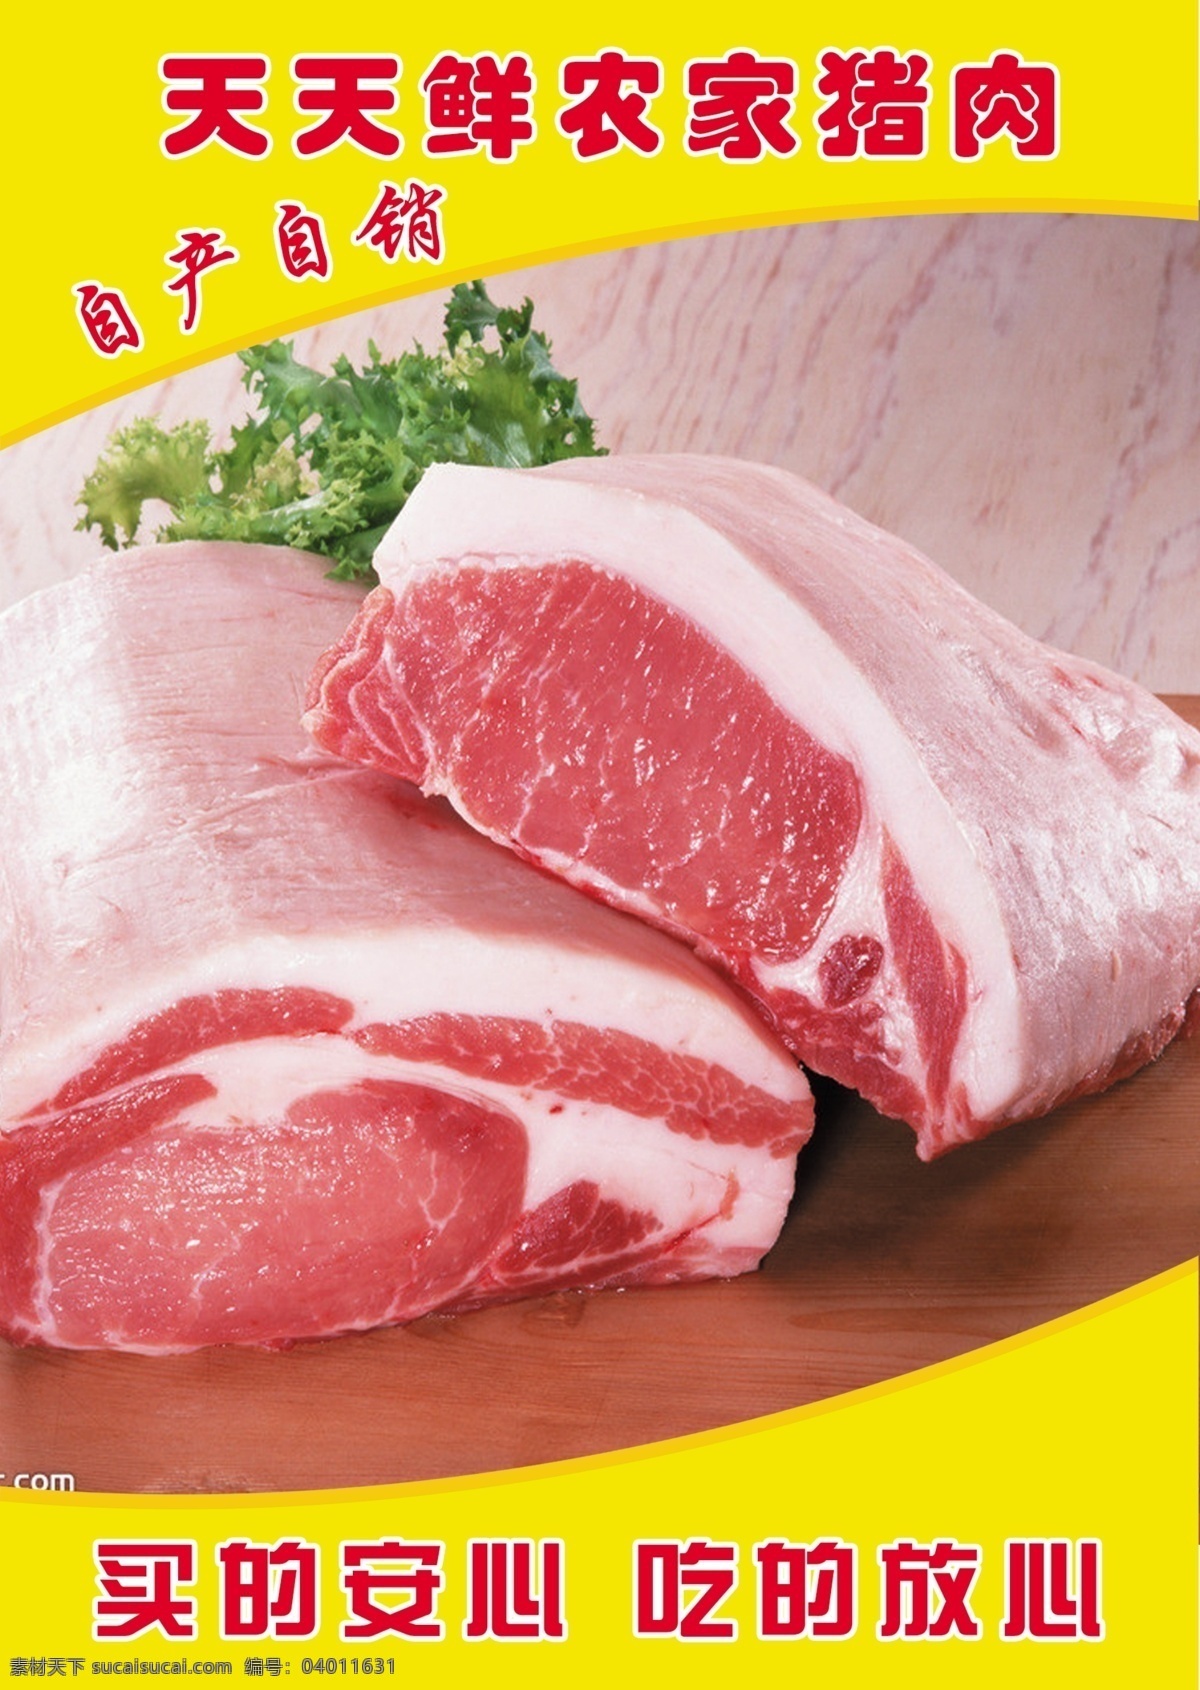 农家 猪肉 背景 底图 农家猪肉 原创设计 原创展板